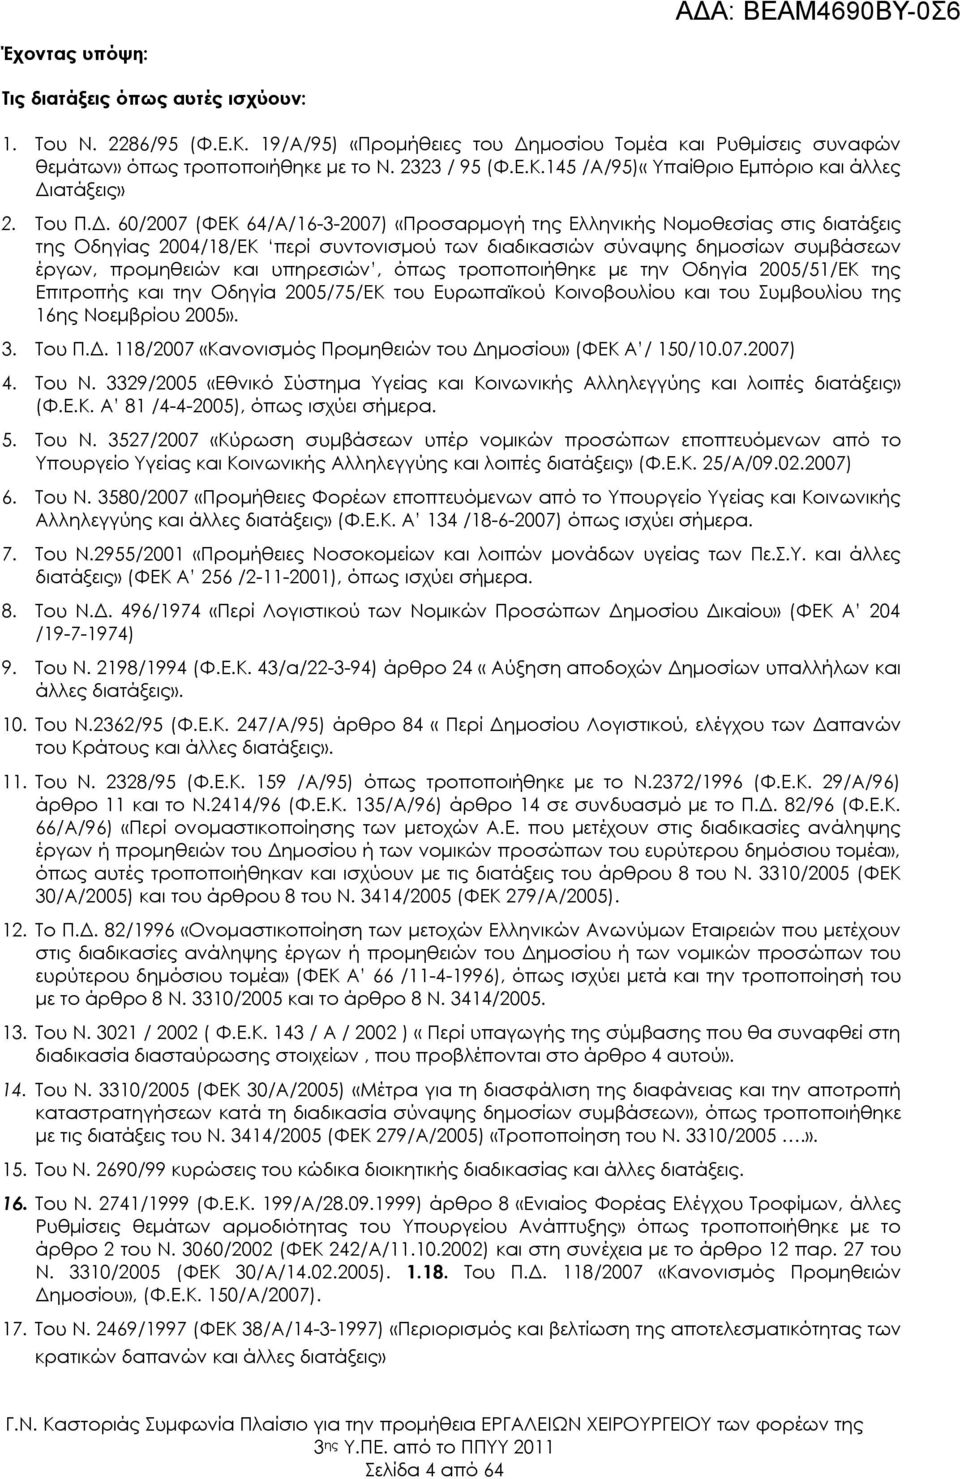 60/2007 (ΦΕΚ 64/Α/16-3-2007) «Προσαρμογή της Ελληνικής Νομοθεσίας στις διατάξεις της Οδηγίας 2004/18/ΕΚ περί συντονισμού των διαδικασιών σύναψης δημοσίων συμβάσεων έργων, προμηθειών και υπηρεσιών,